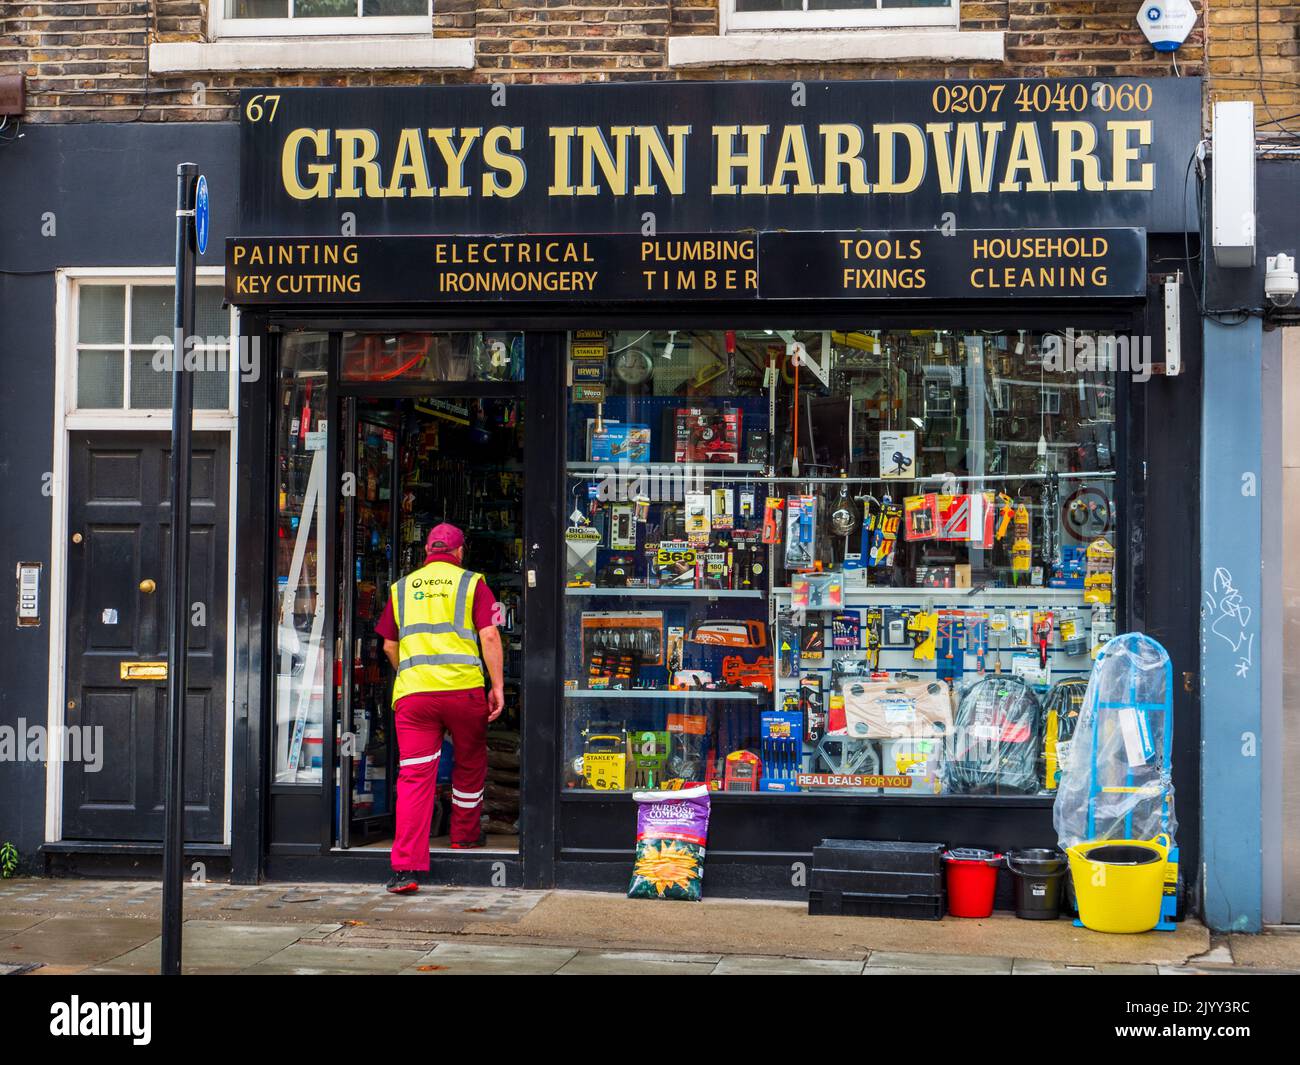 Tienda de Hardware en Londres - Tienda de Hardware Grays Inn en Grays Inn Road en el centro de Londres. Foto de stock